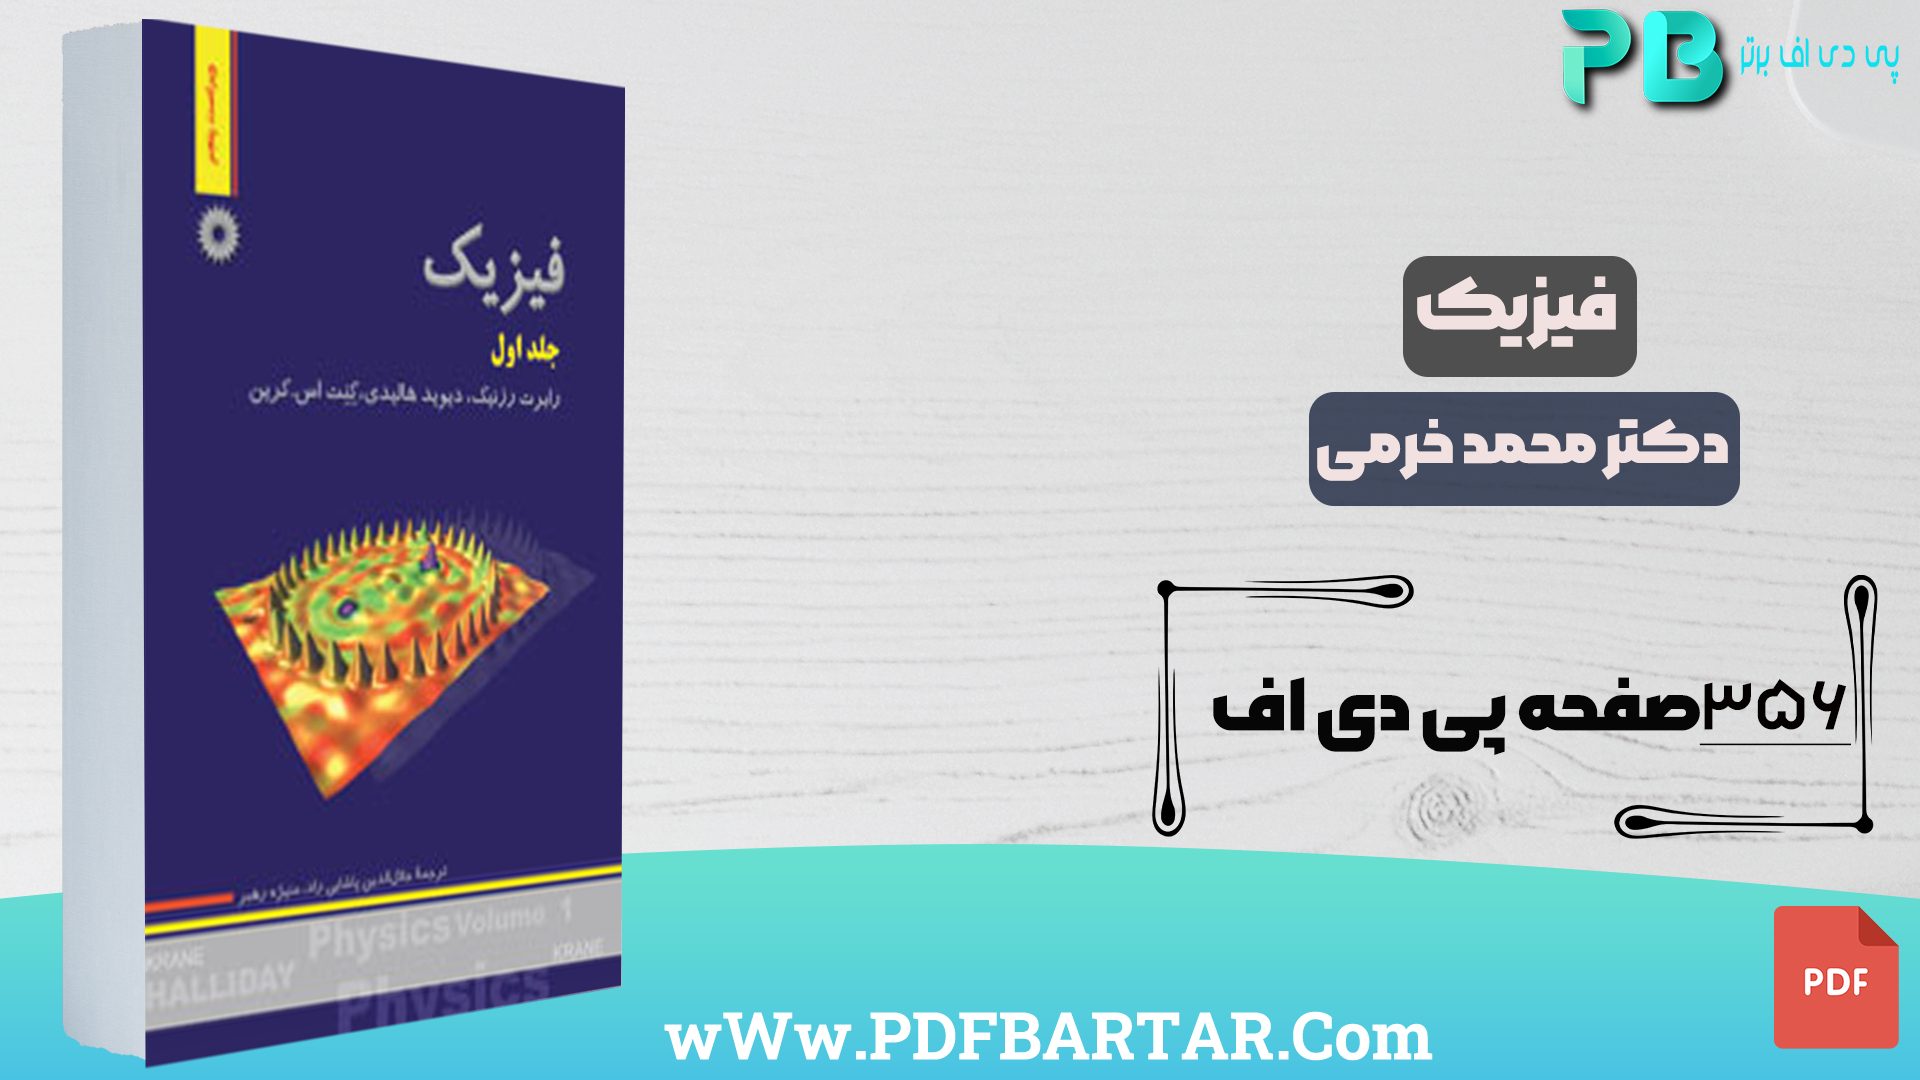 دانلود پی دی اف کتاب فیزیک دکتر محمد خرمی PDF - پی دی اف برتر